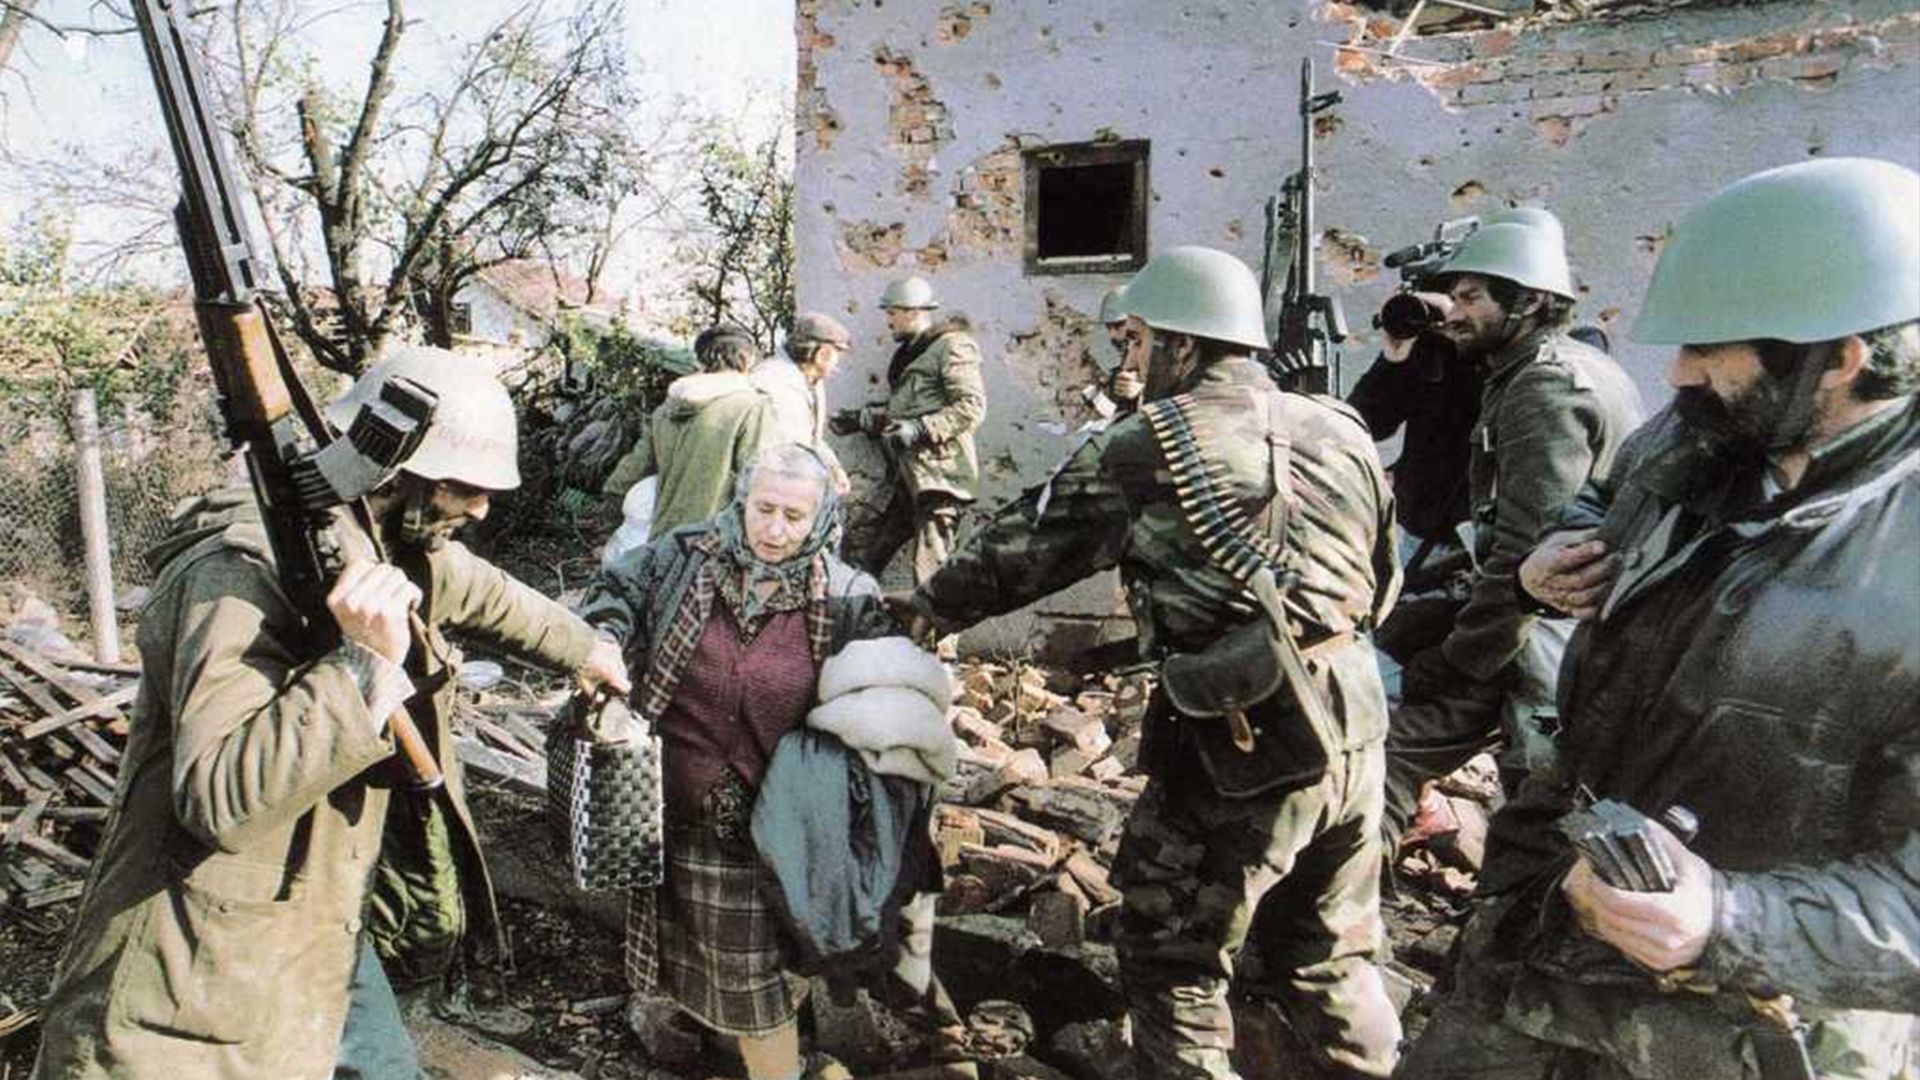 Як зараз живуть країни, які постраждали у кривавих Югославських війнах: фото